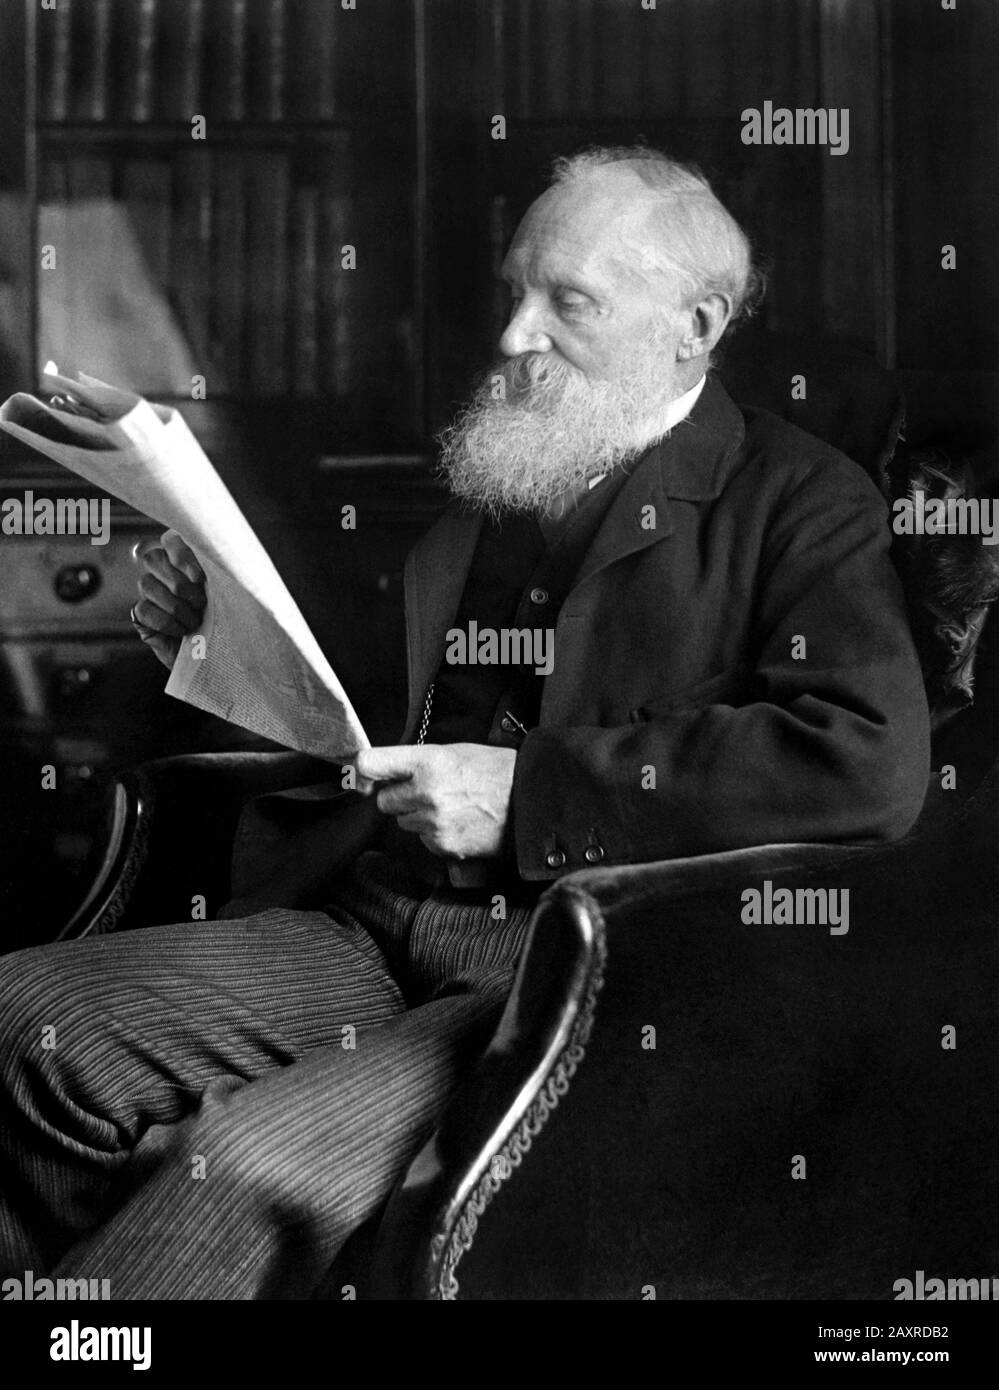 The irish-born phisician LORD William Thompson KELVIN ( Belfast 1824 - Netherhall 1907 ) founder of Thermodinamic and the graduation of temperature .- TEMPERATURA in GRADI SCALA KELVIN - FISICA - FISICO - scienziato - SCIENZA - SCIENCE - scientist - scopritore - ENERGIA TERMICA - TERMODINAMICA - portrait - ritratto - profilo - profile - barba - beard - white hair - capelli bianchi - uomo anziano vecchio - older old ancient man  - lettore di un giornale quotidiano - reader - newspaper ---  ARCHIVIO GBB Stock Photo